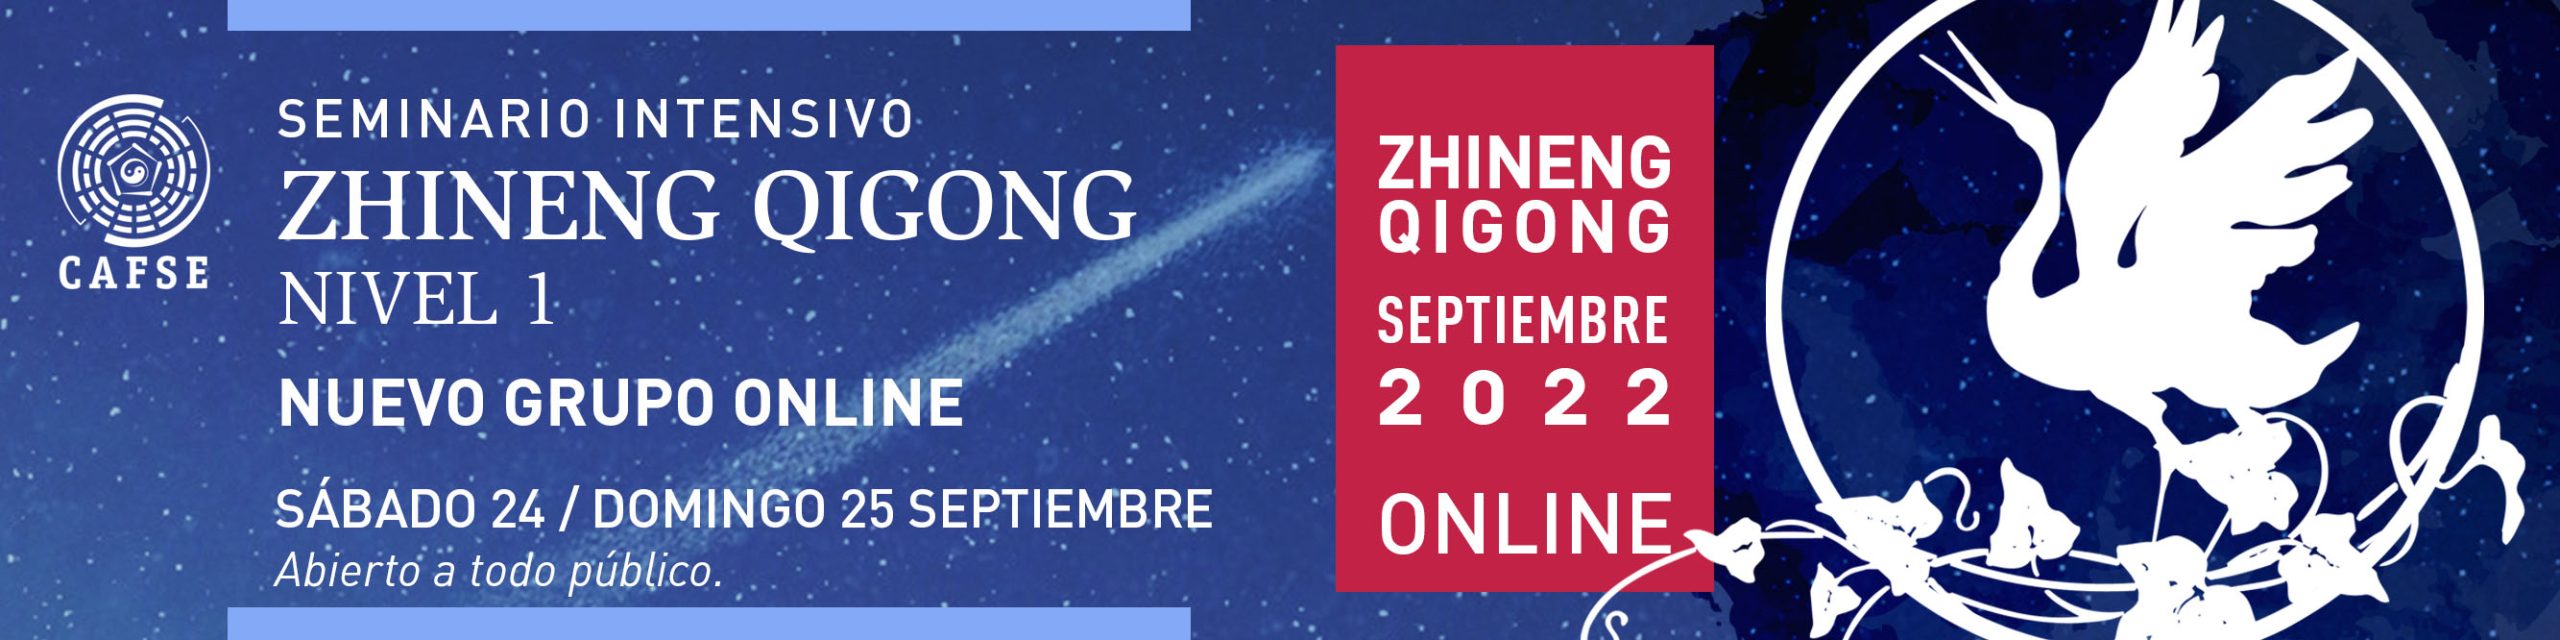 Seminario Intensivo ZhiNeng QiGong, Nivel 1